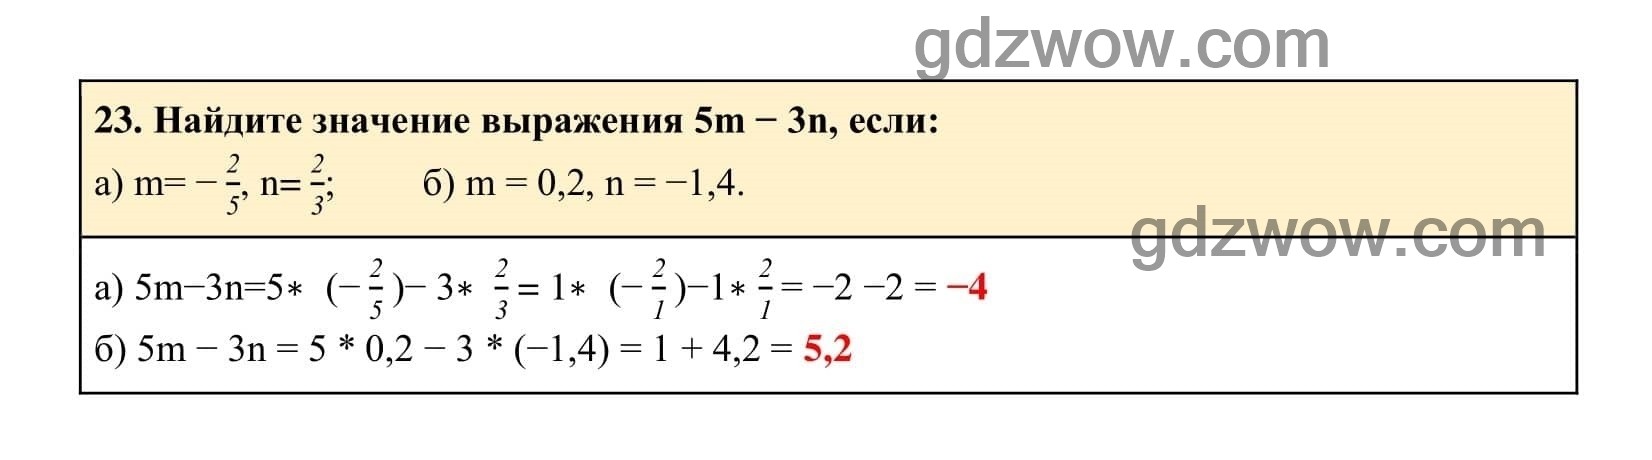 Упражнение 23 - ГДЗ по Алгебре 7 класс Учебник Макарычев (решебник) - GDZwow